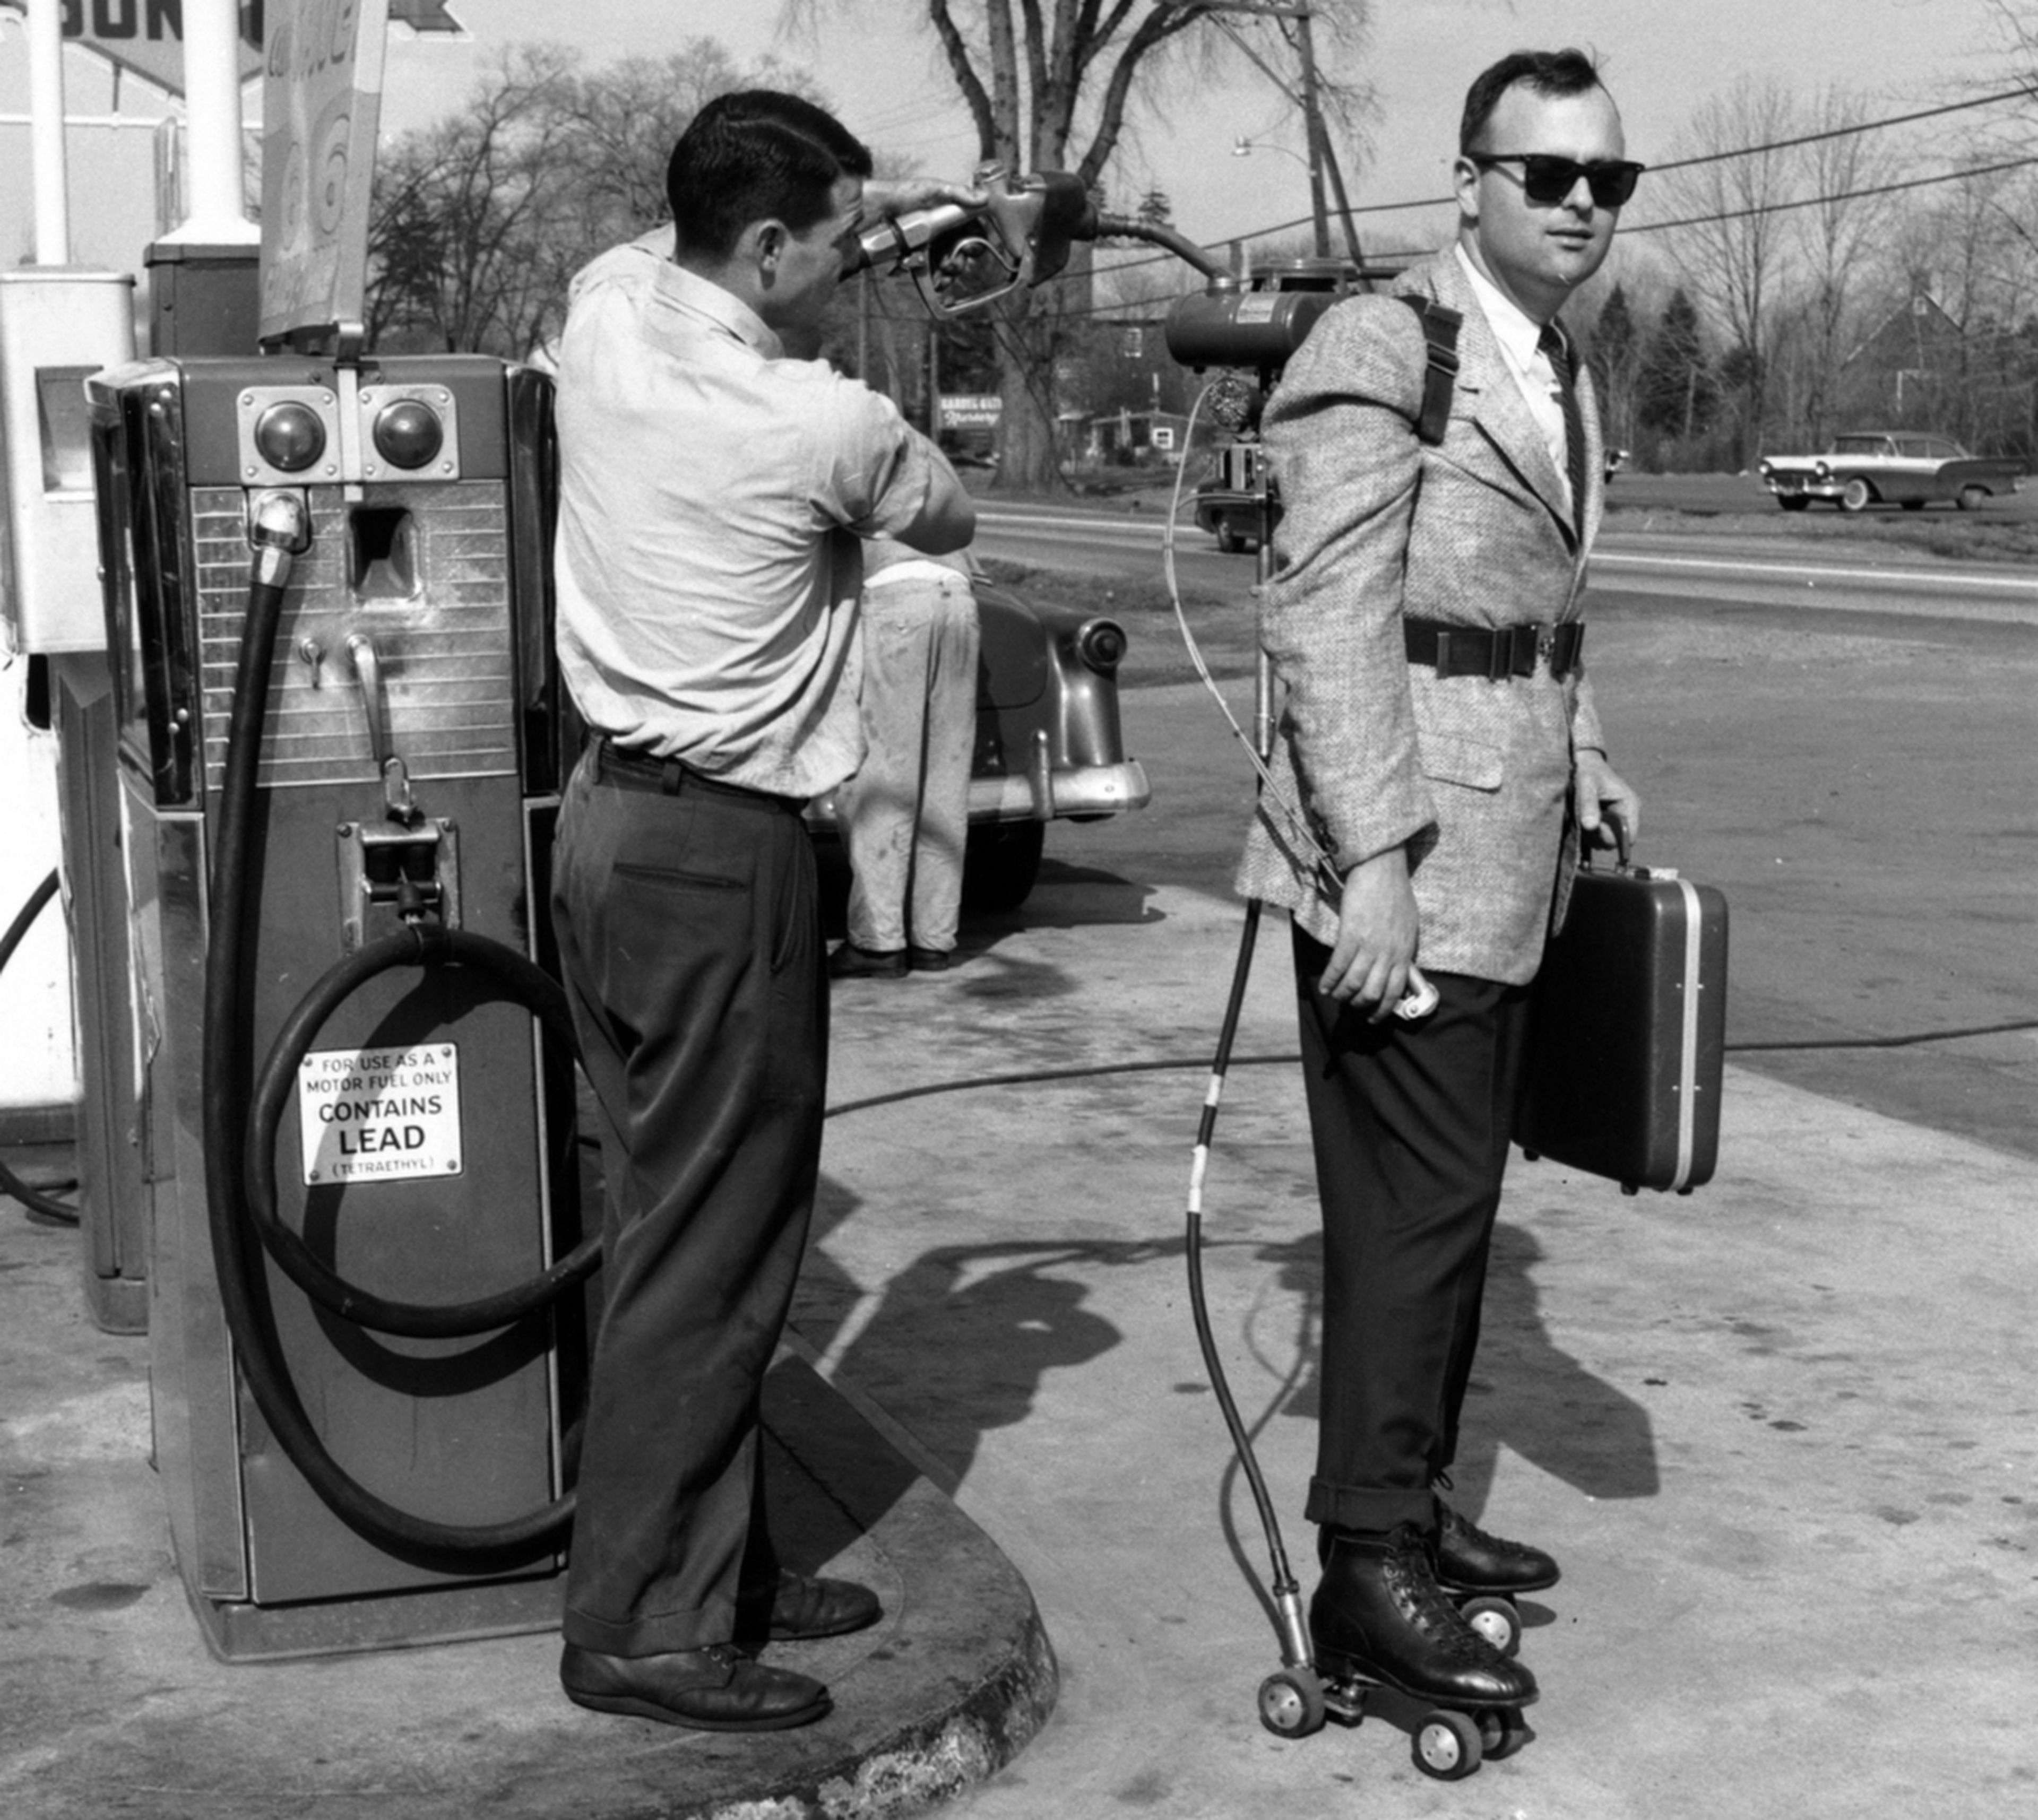 Hace 50 años los patinetes motorizados funcionaba con gasolina, y no tenían frenos: esta es su historia